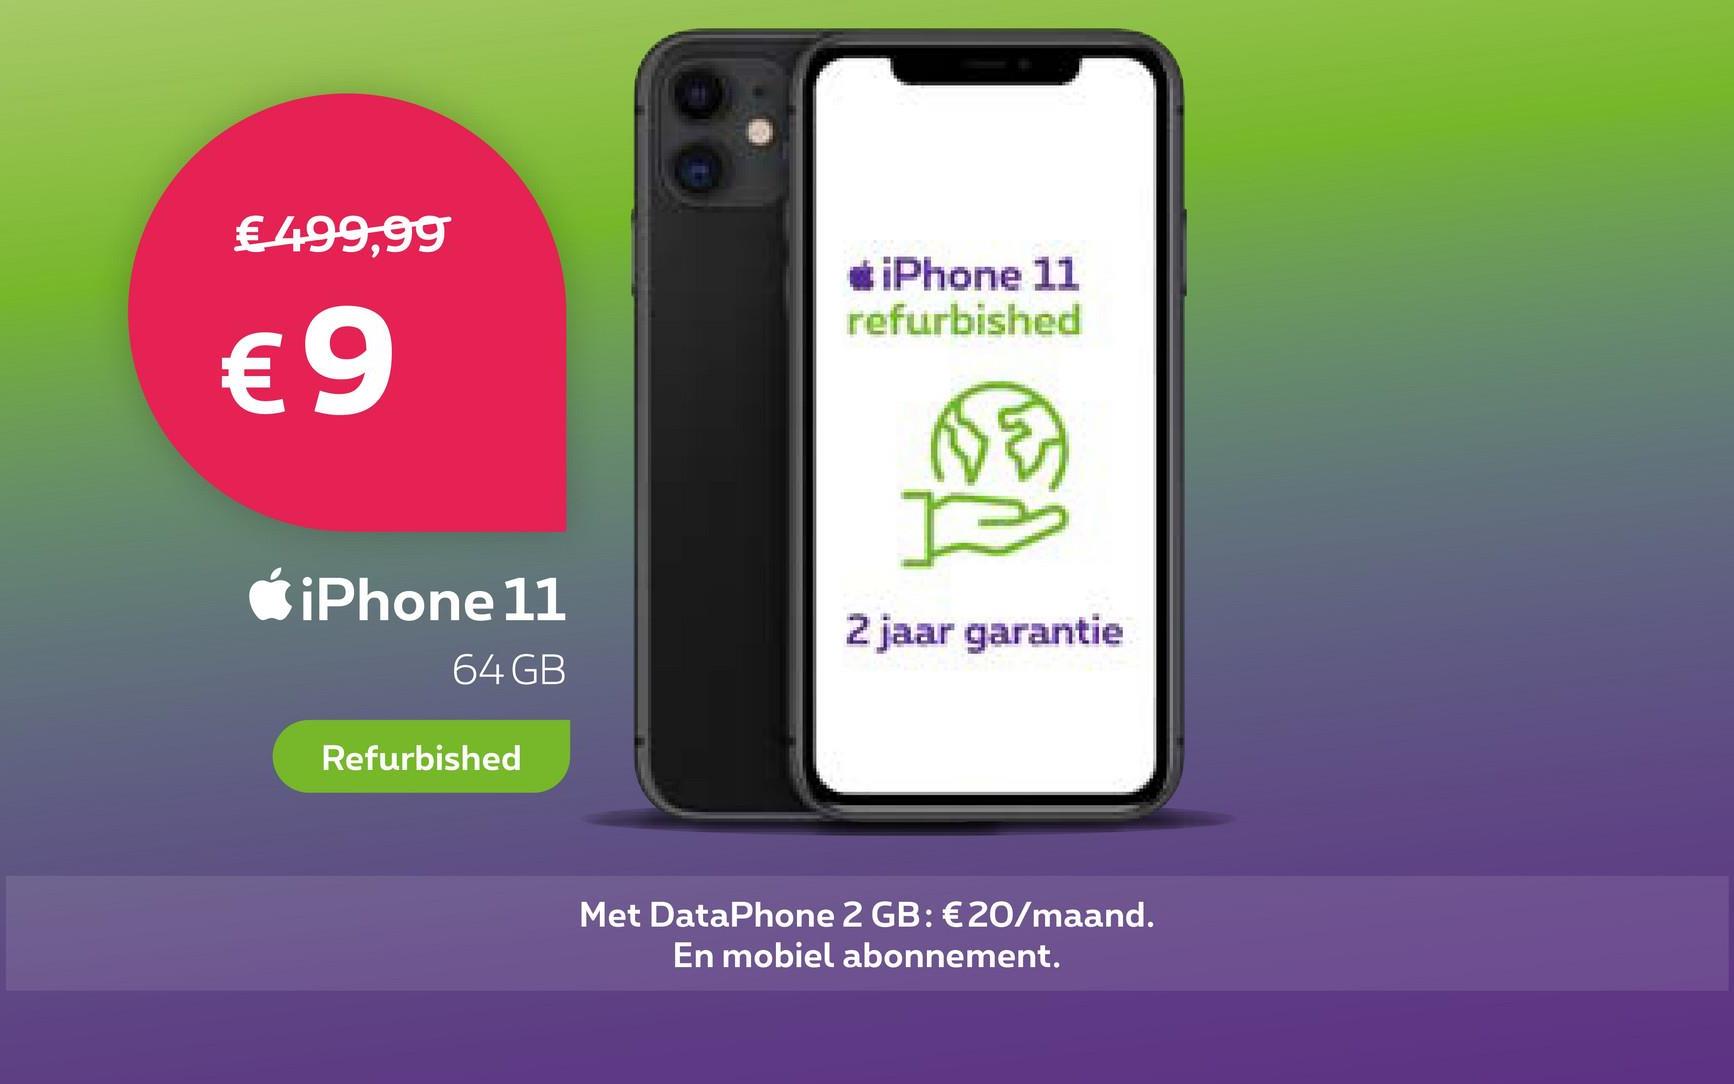 € 499,99
€9
iPhone 11
64 GB
Refurbished
*iPhone 11
refurbished
FE
I
2 jaar garantie
Met DataPhone 2 GB: €20/maand.
En mobiel abonnement.